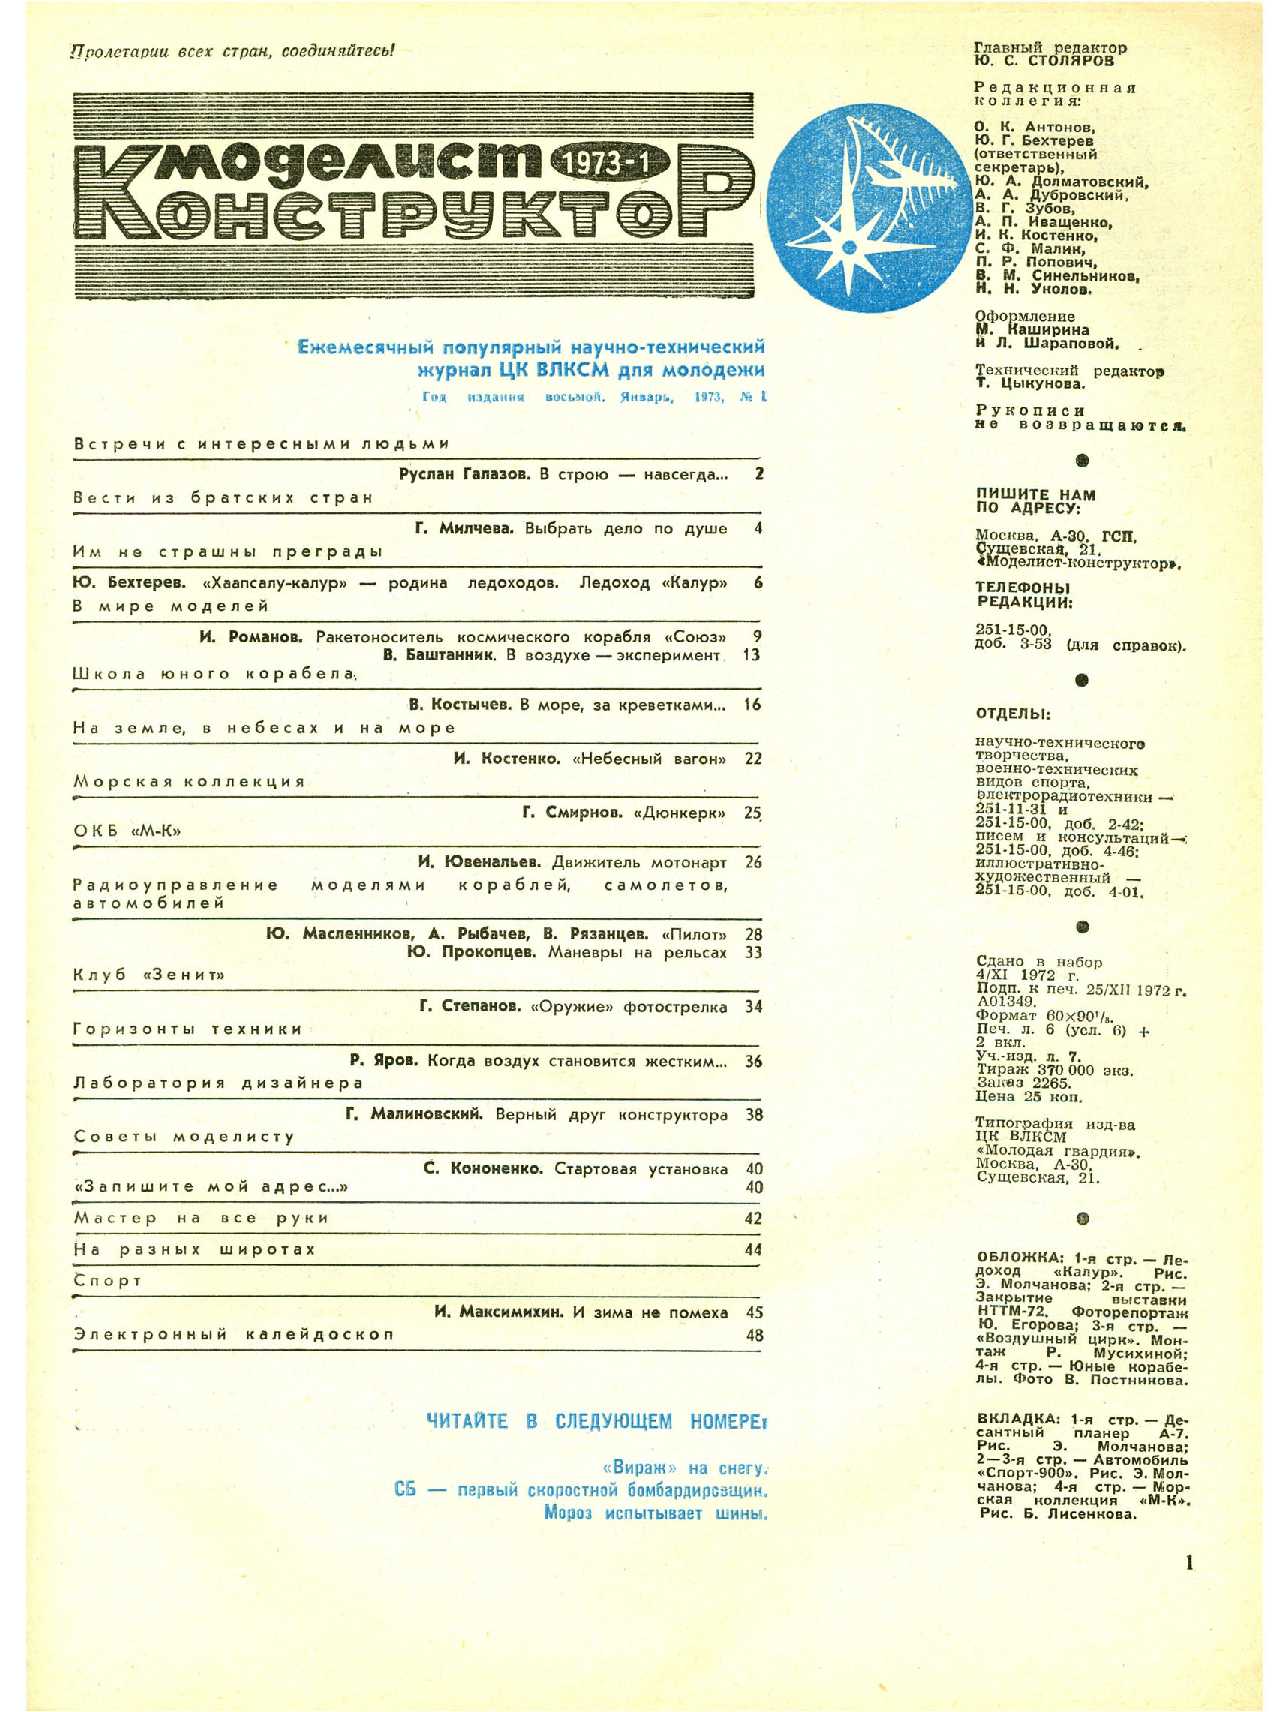 МК 1, 1973, 1 c.